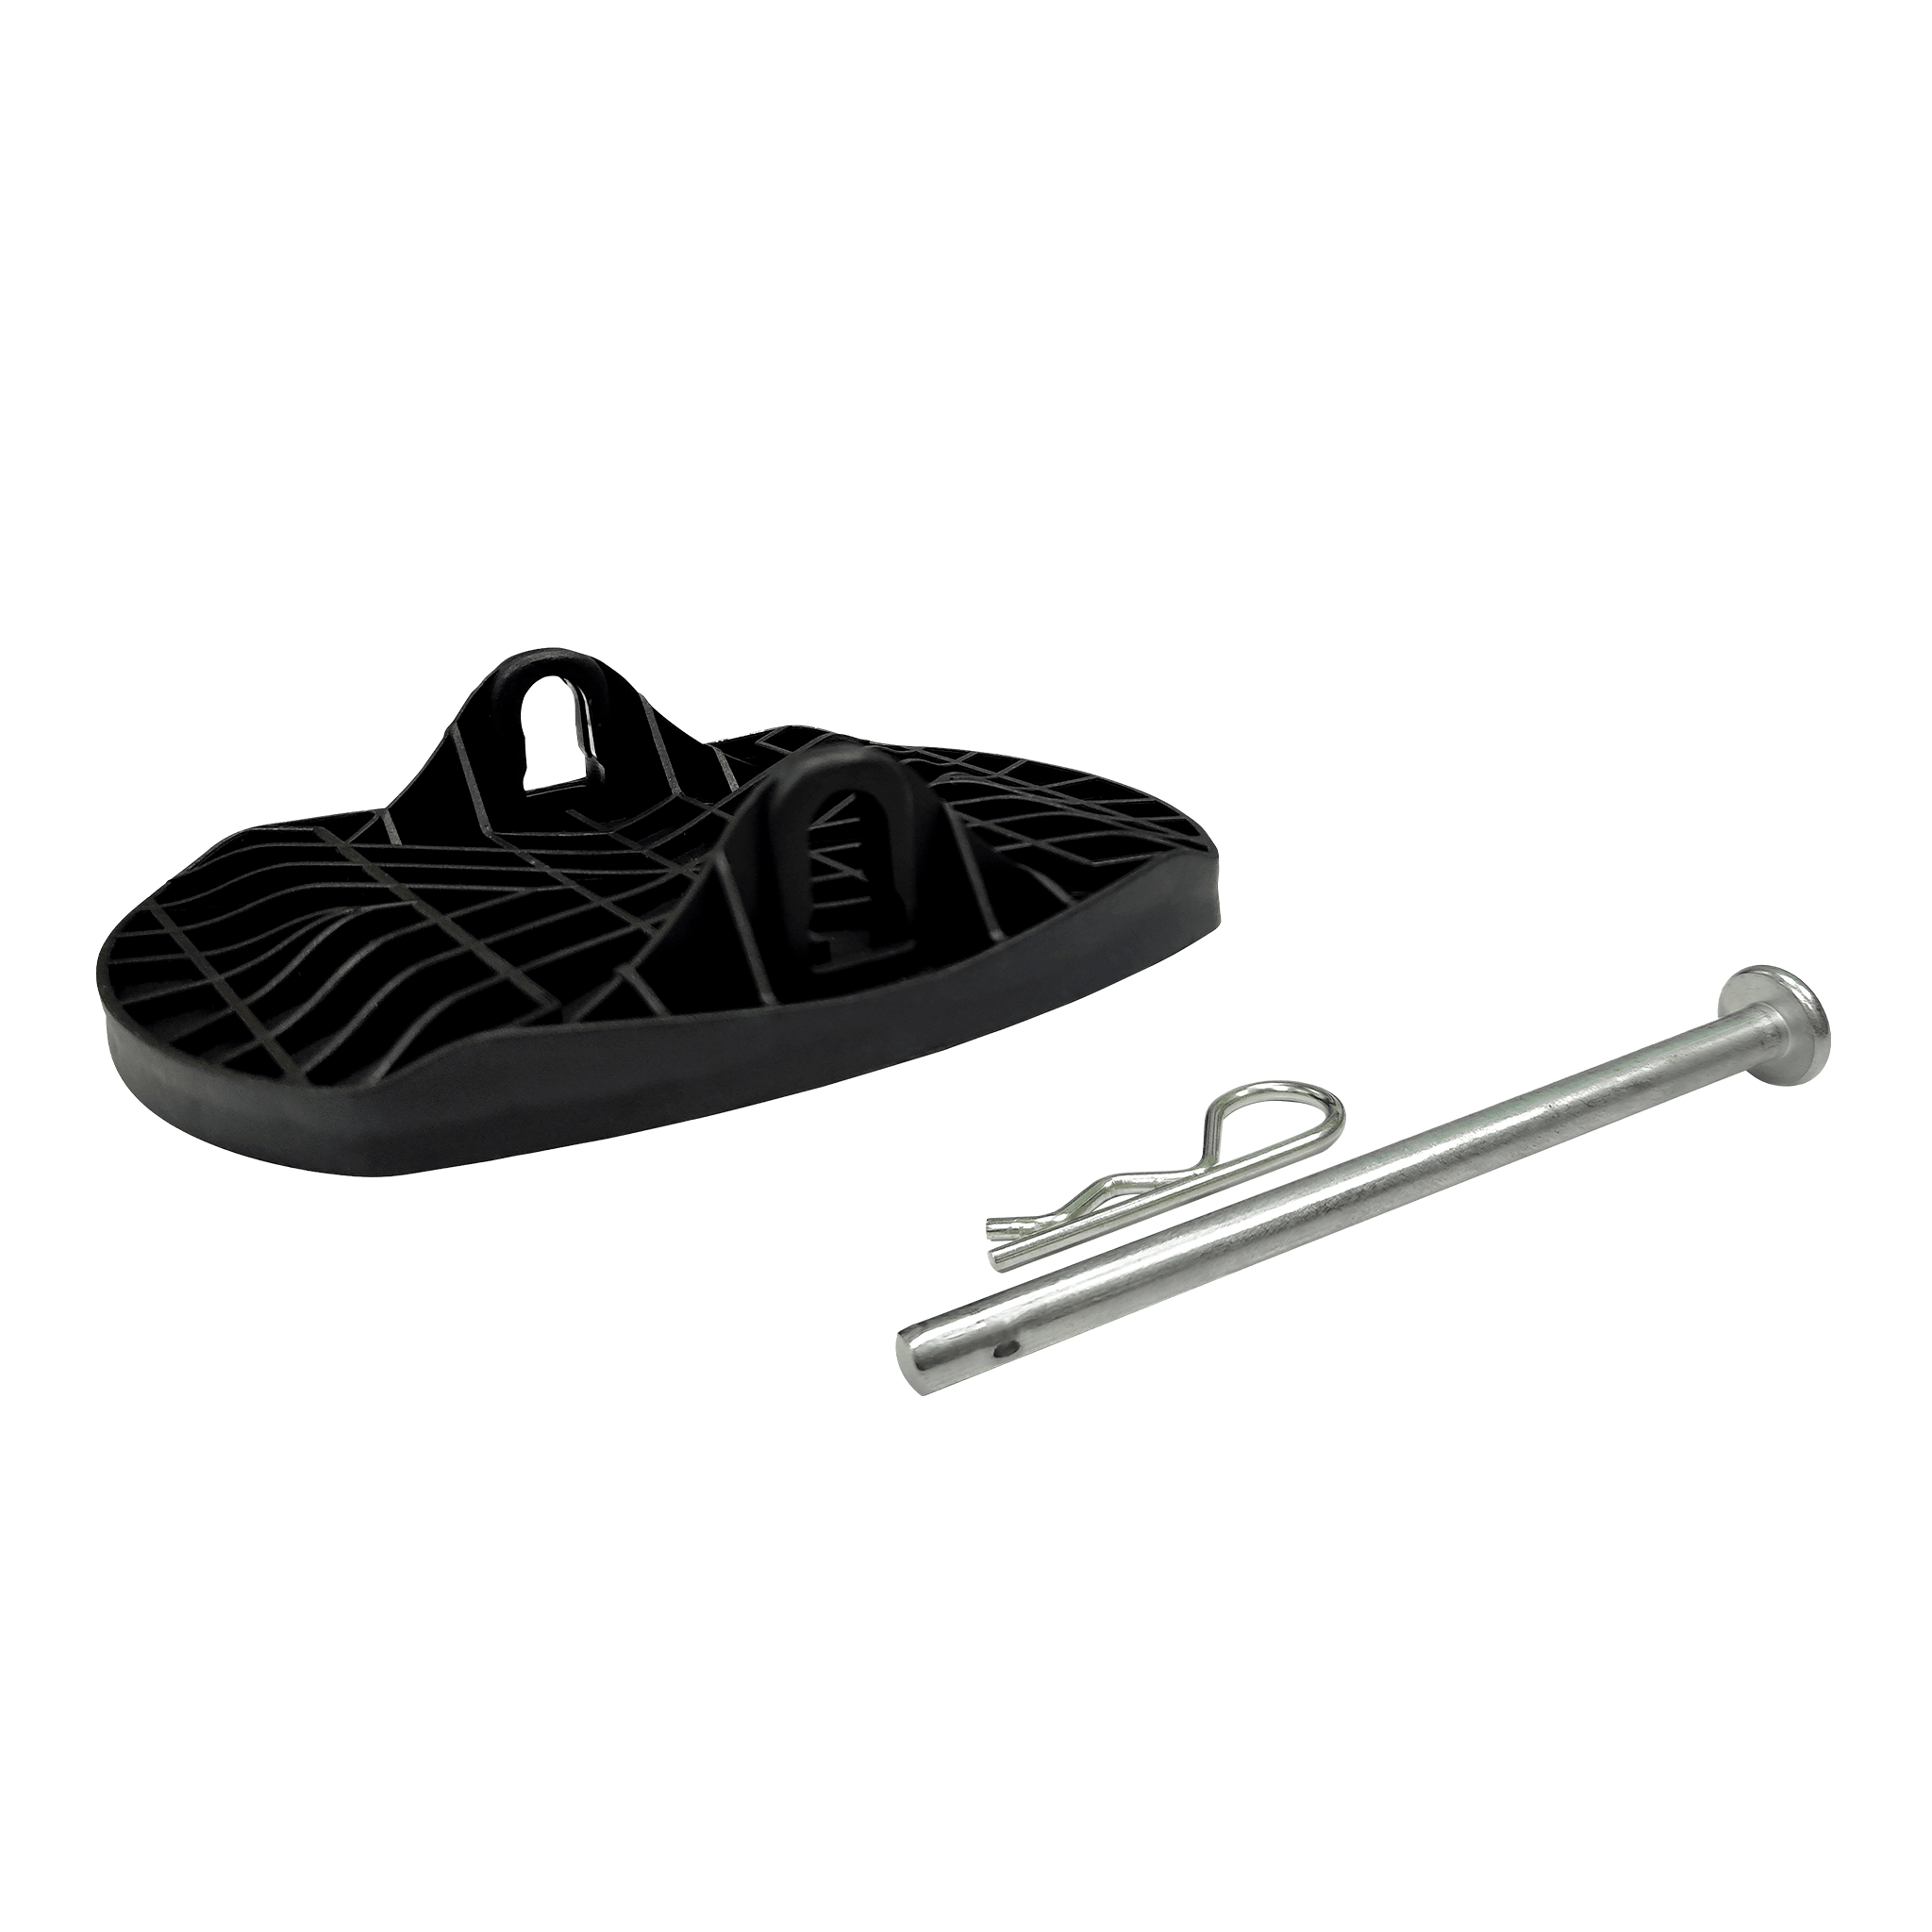 Stabiliser Feet with Pins - 4 Pack - Aussie Traveller